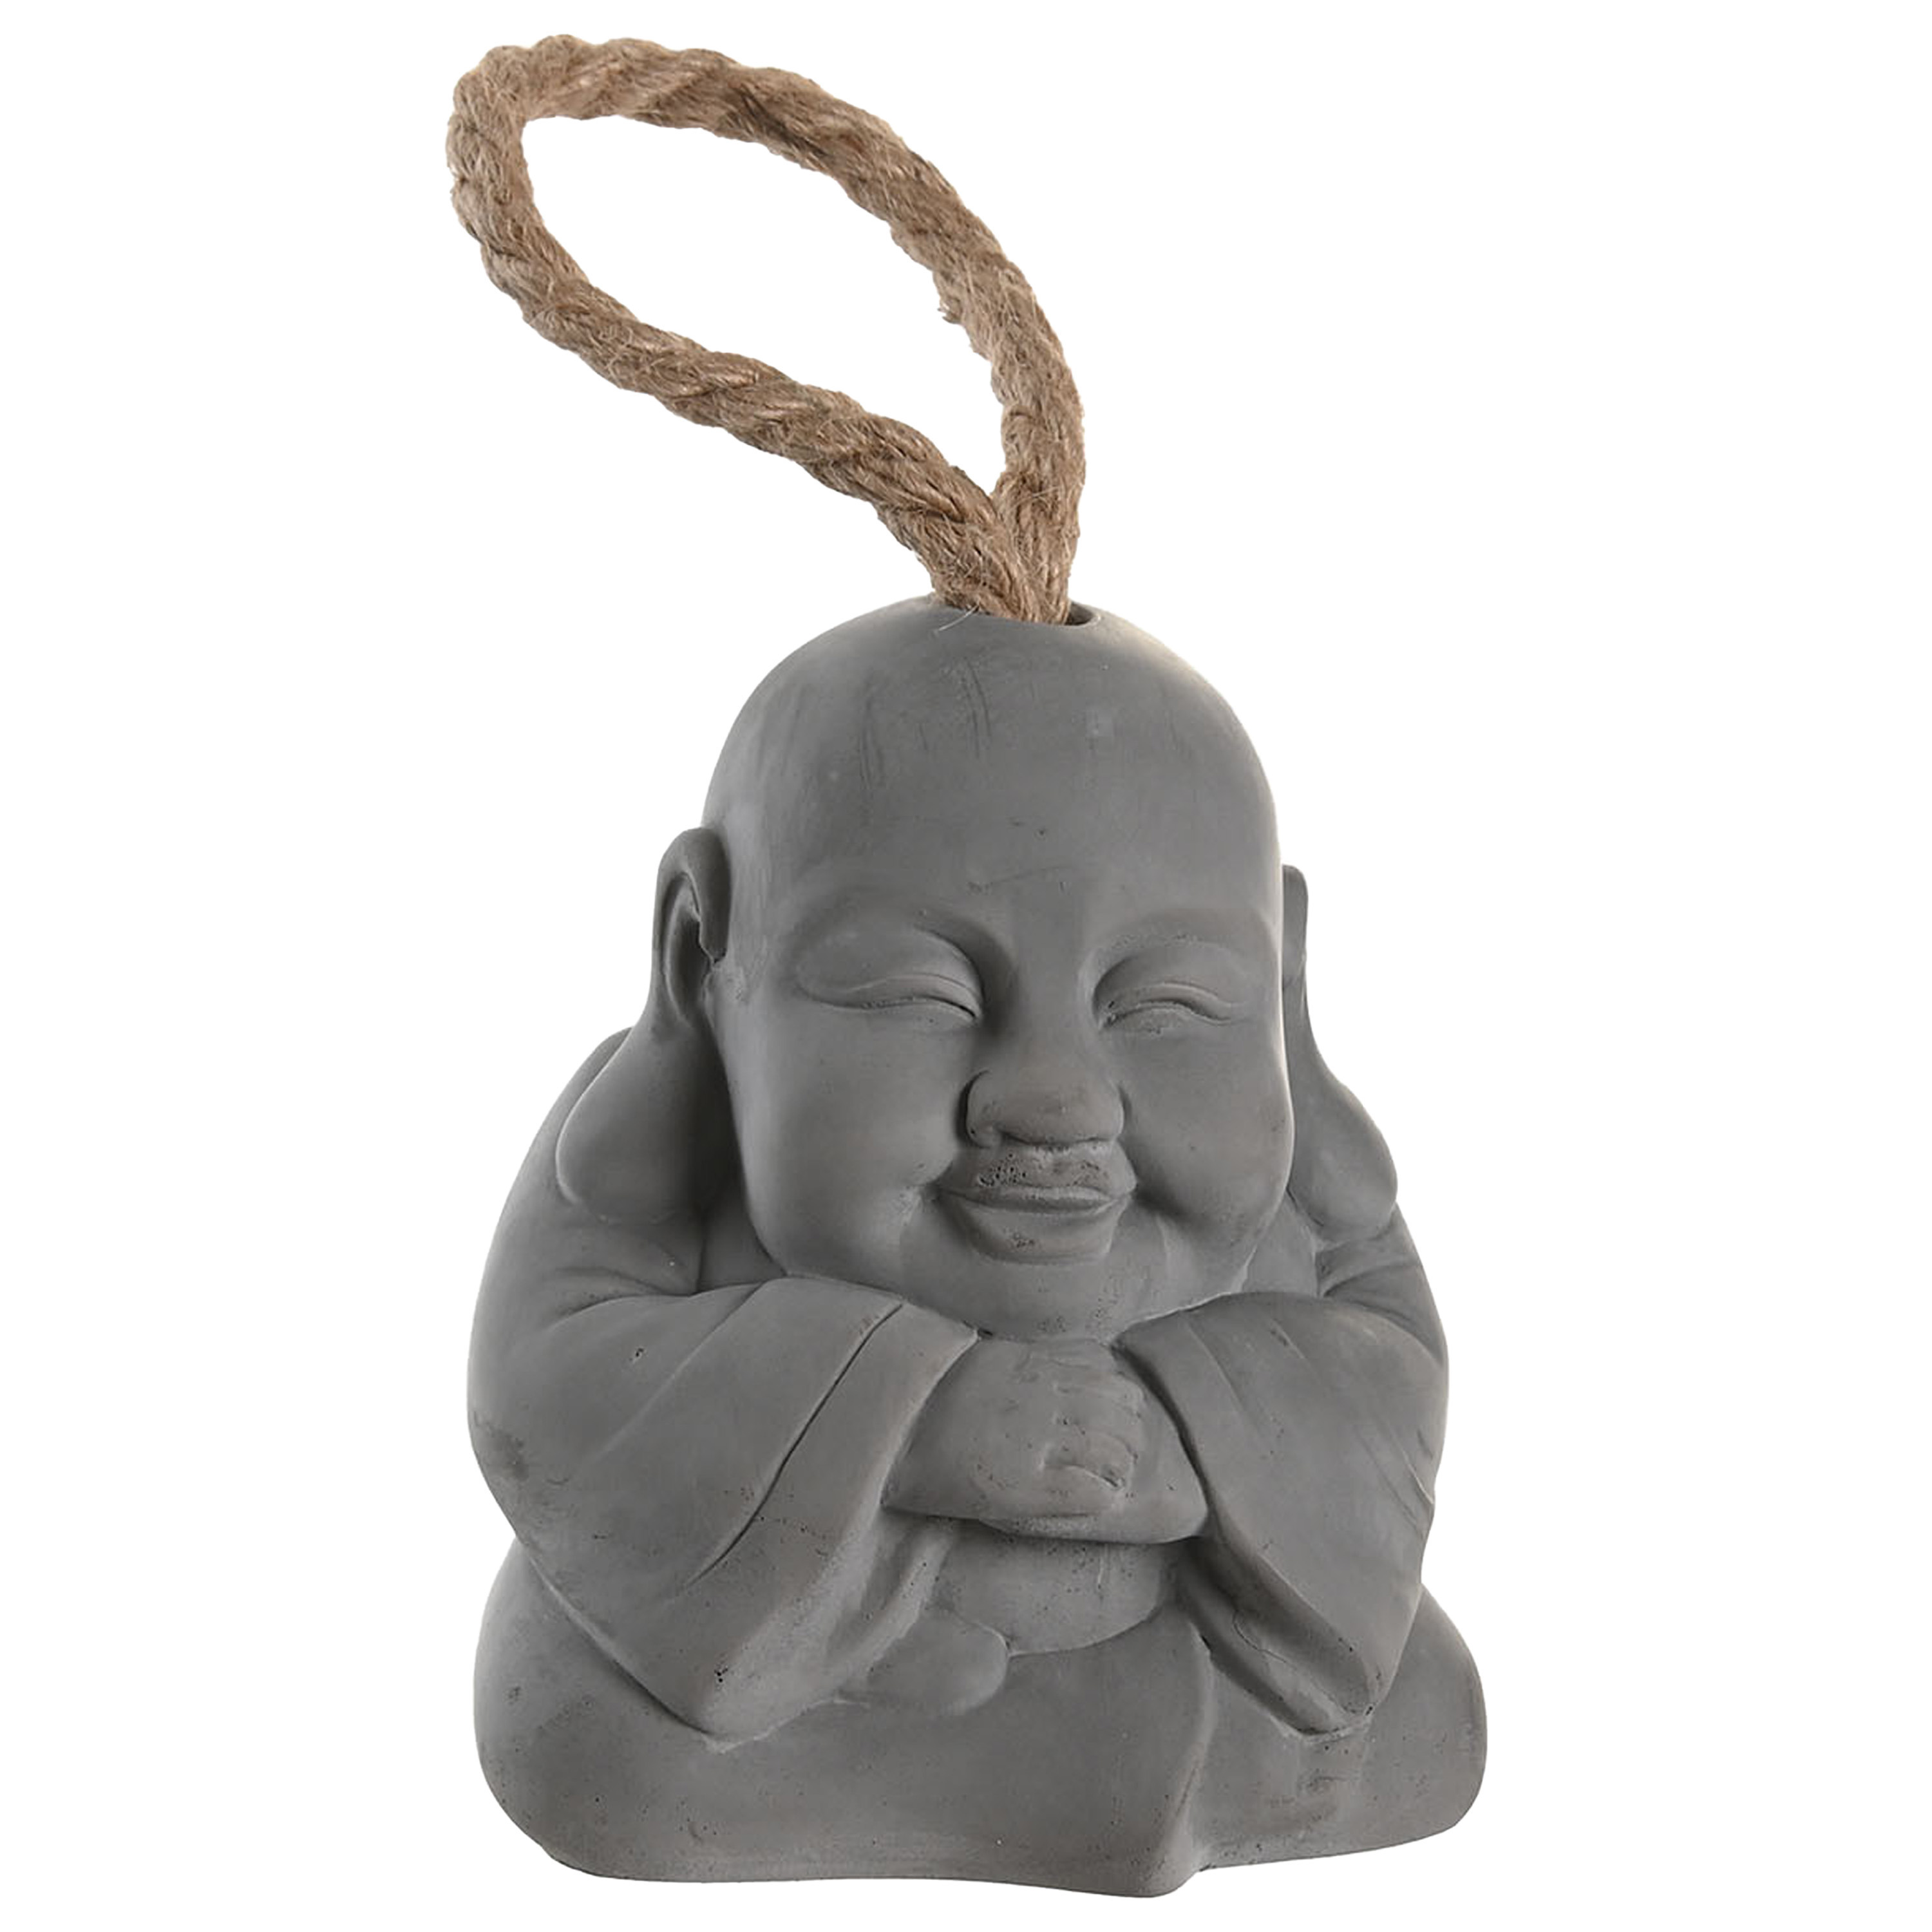 Items Deurstopper Boeddha beeld 1.2 kilo gewicht met oppak koord cement grijs 12 x 15 cm